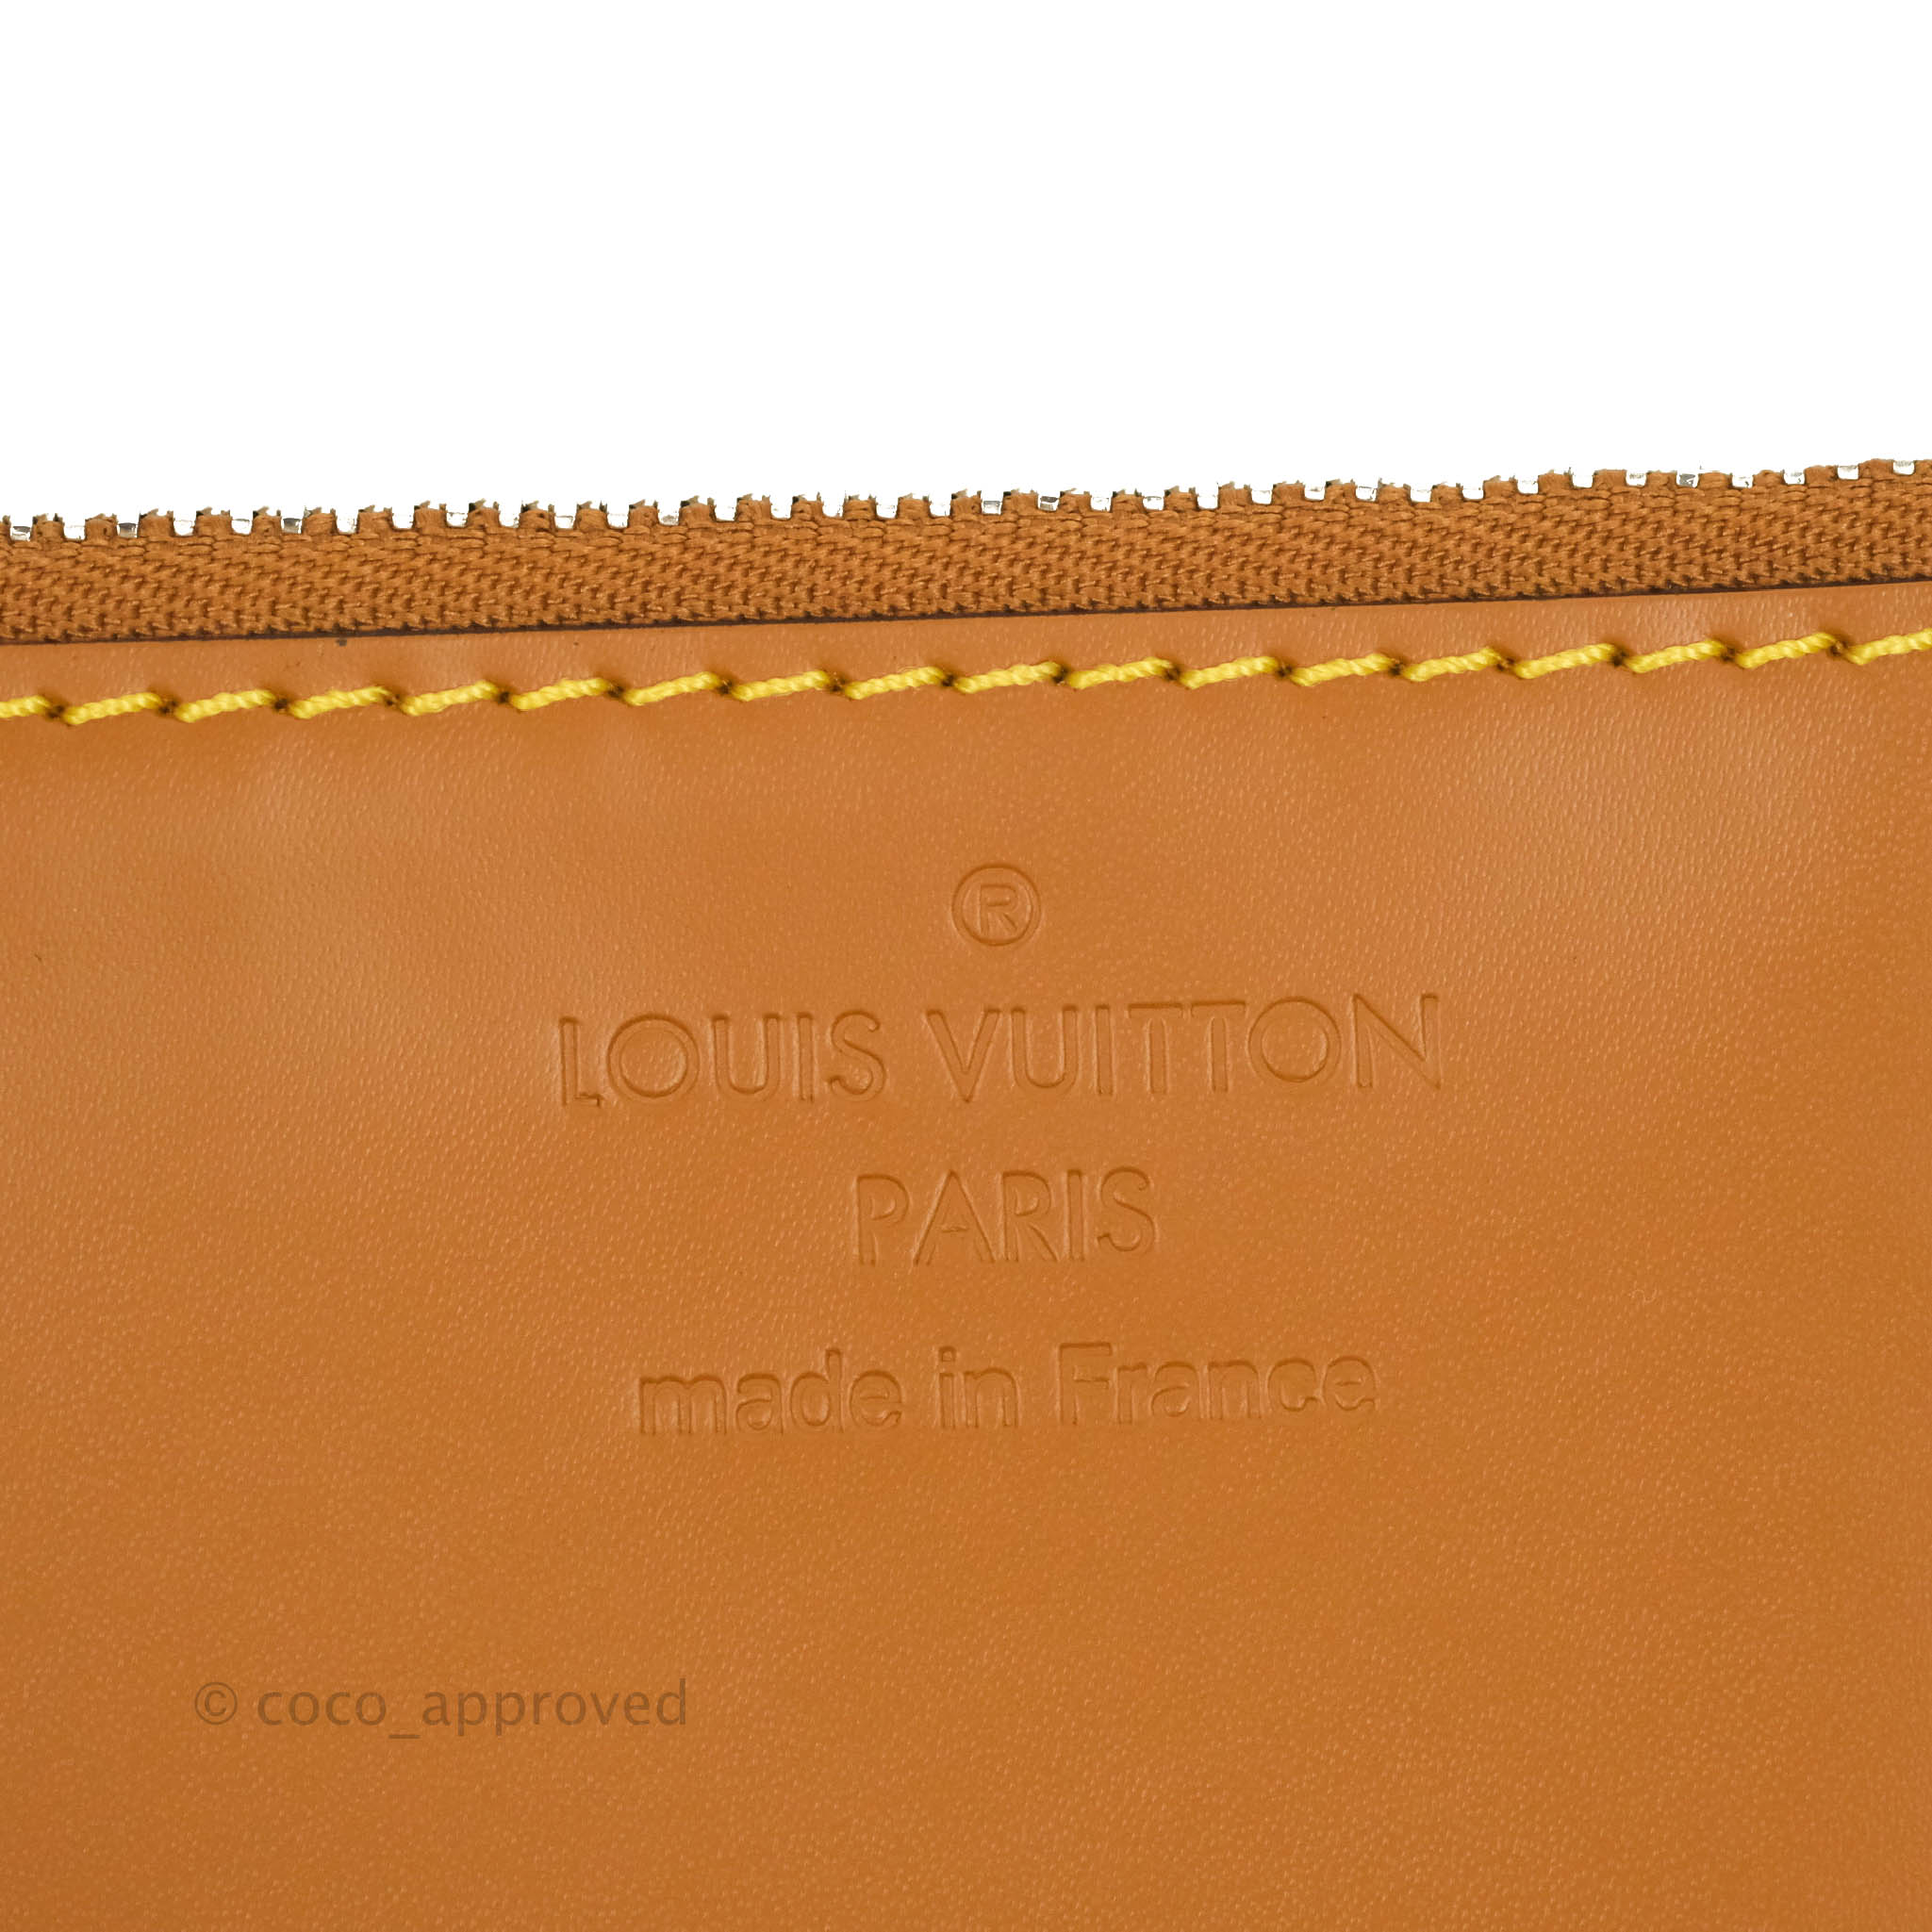 Sold at Auction: Louis Vuitton Bucket Bag Paris France